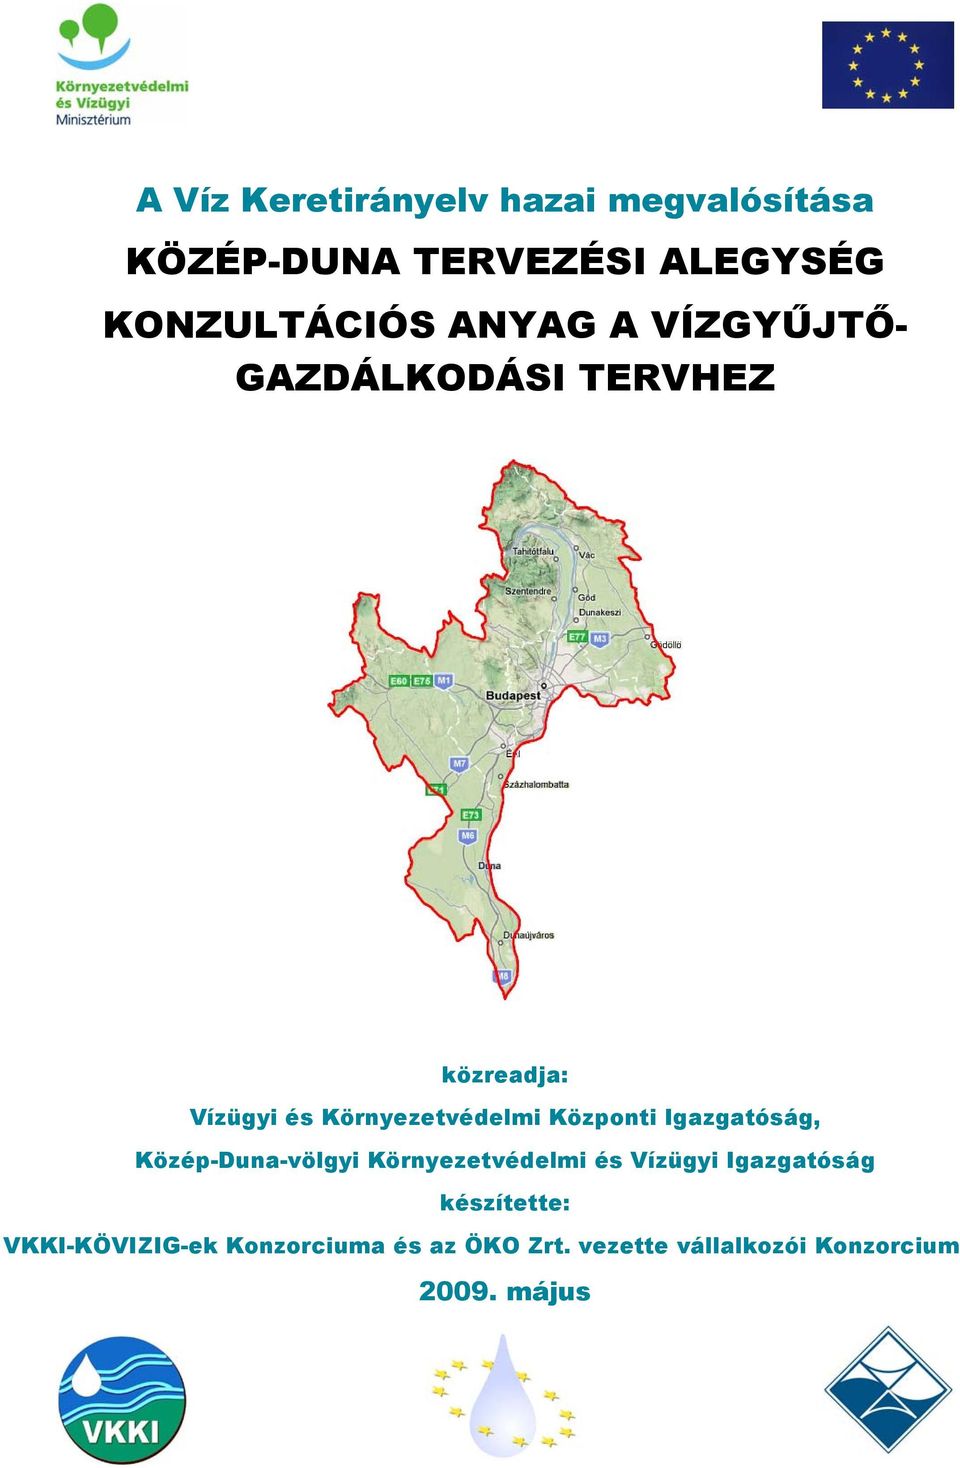 Központi Igazgatóság, Közép-Duna-völgyi Környezetvédelmi és Vízügyi Igazgatóság